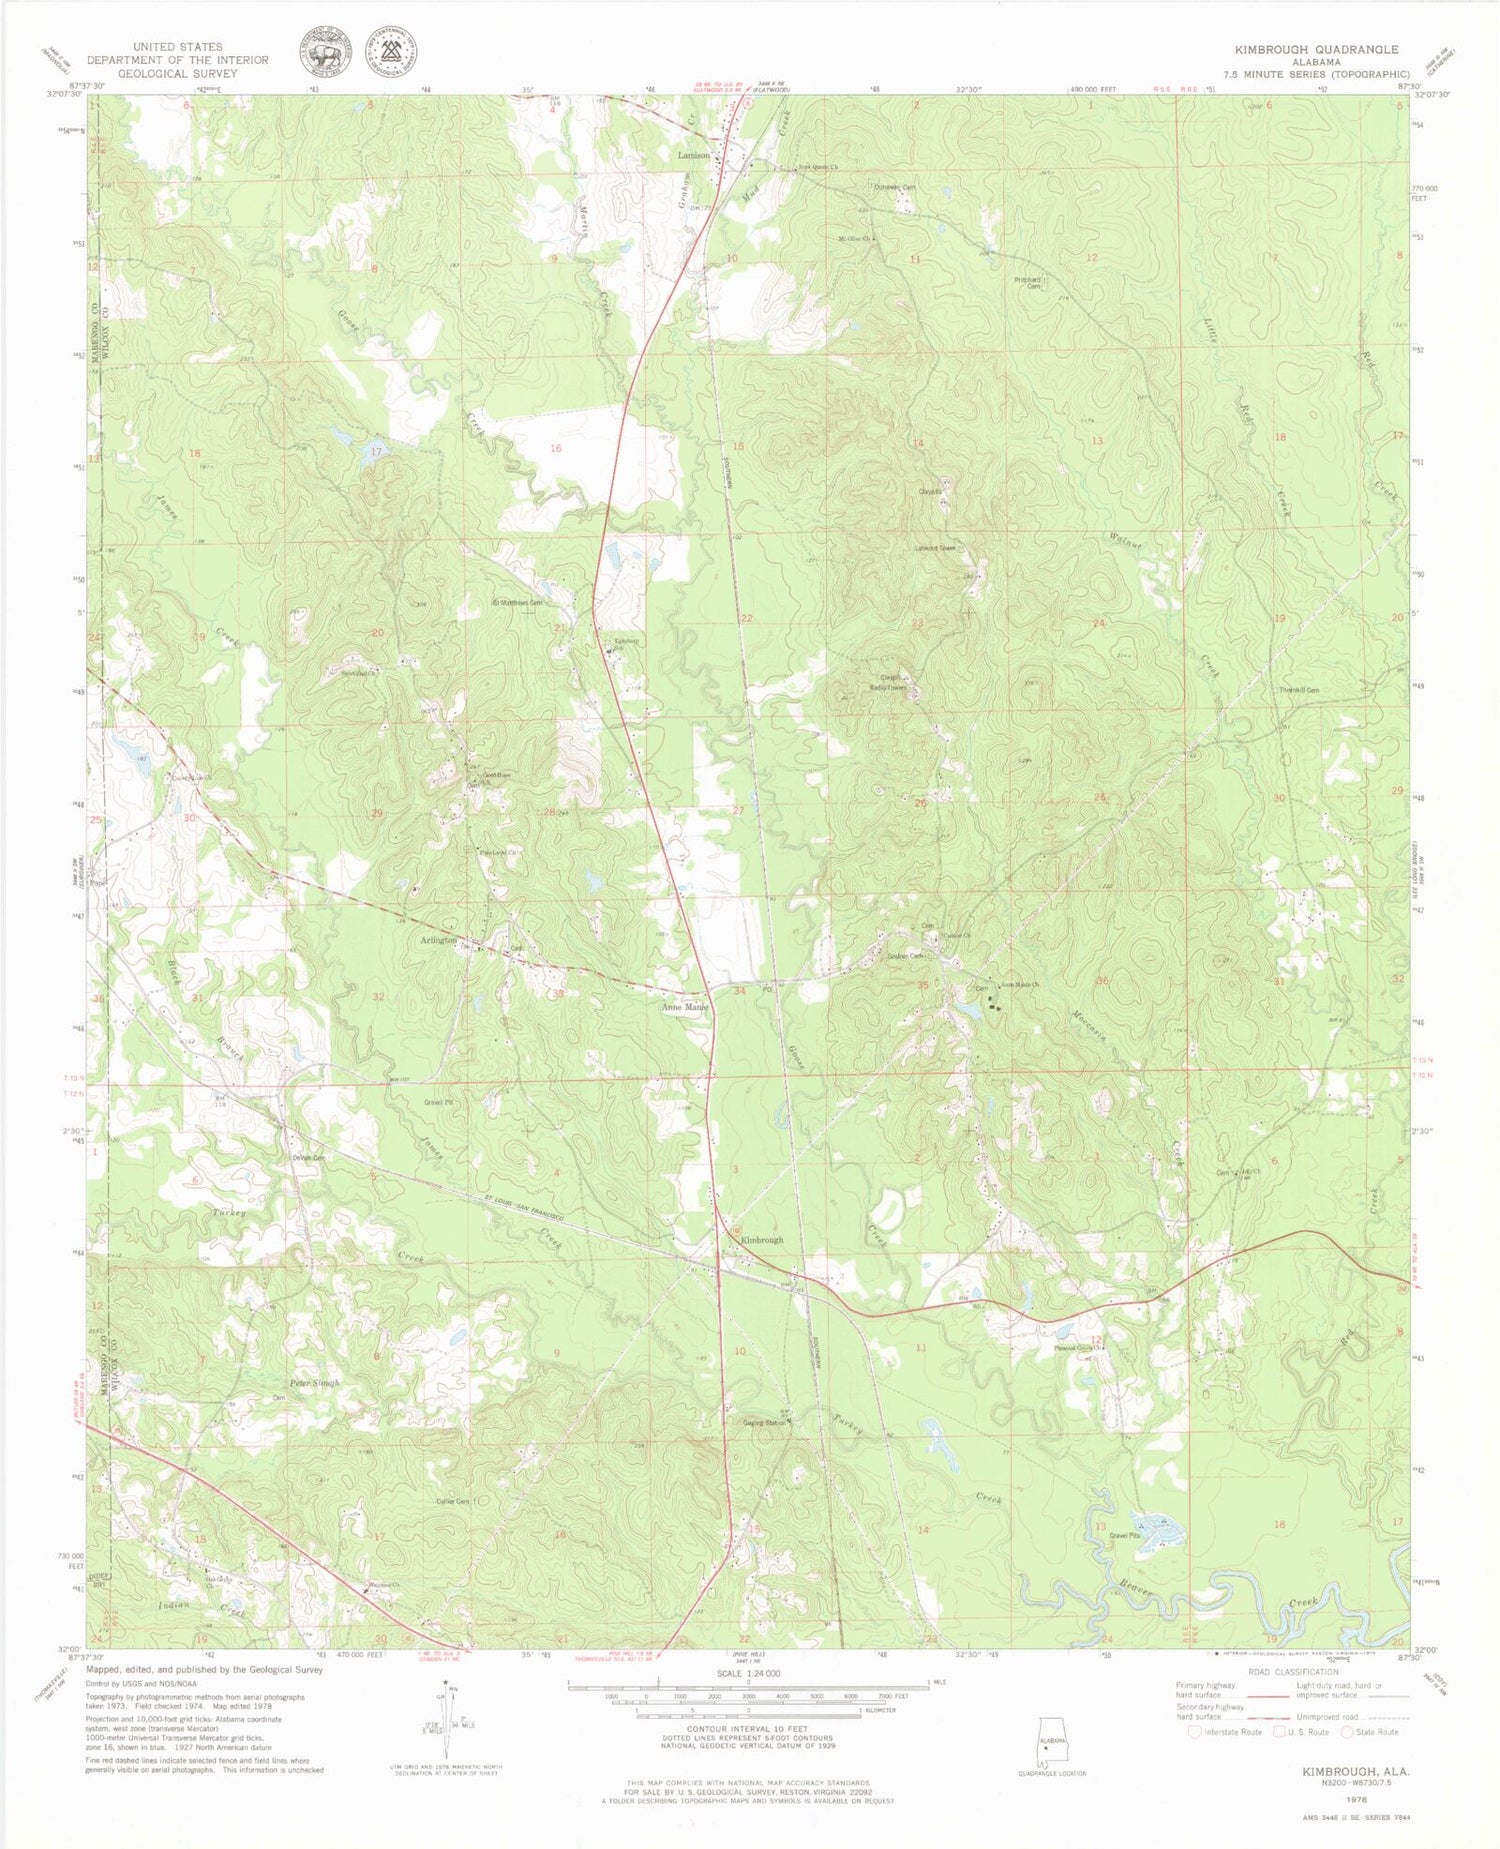 Classic USGS Kimbrough Alabama 7.5'x7.5' Topo Map Image